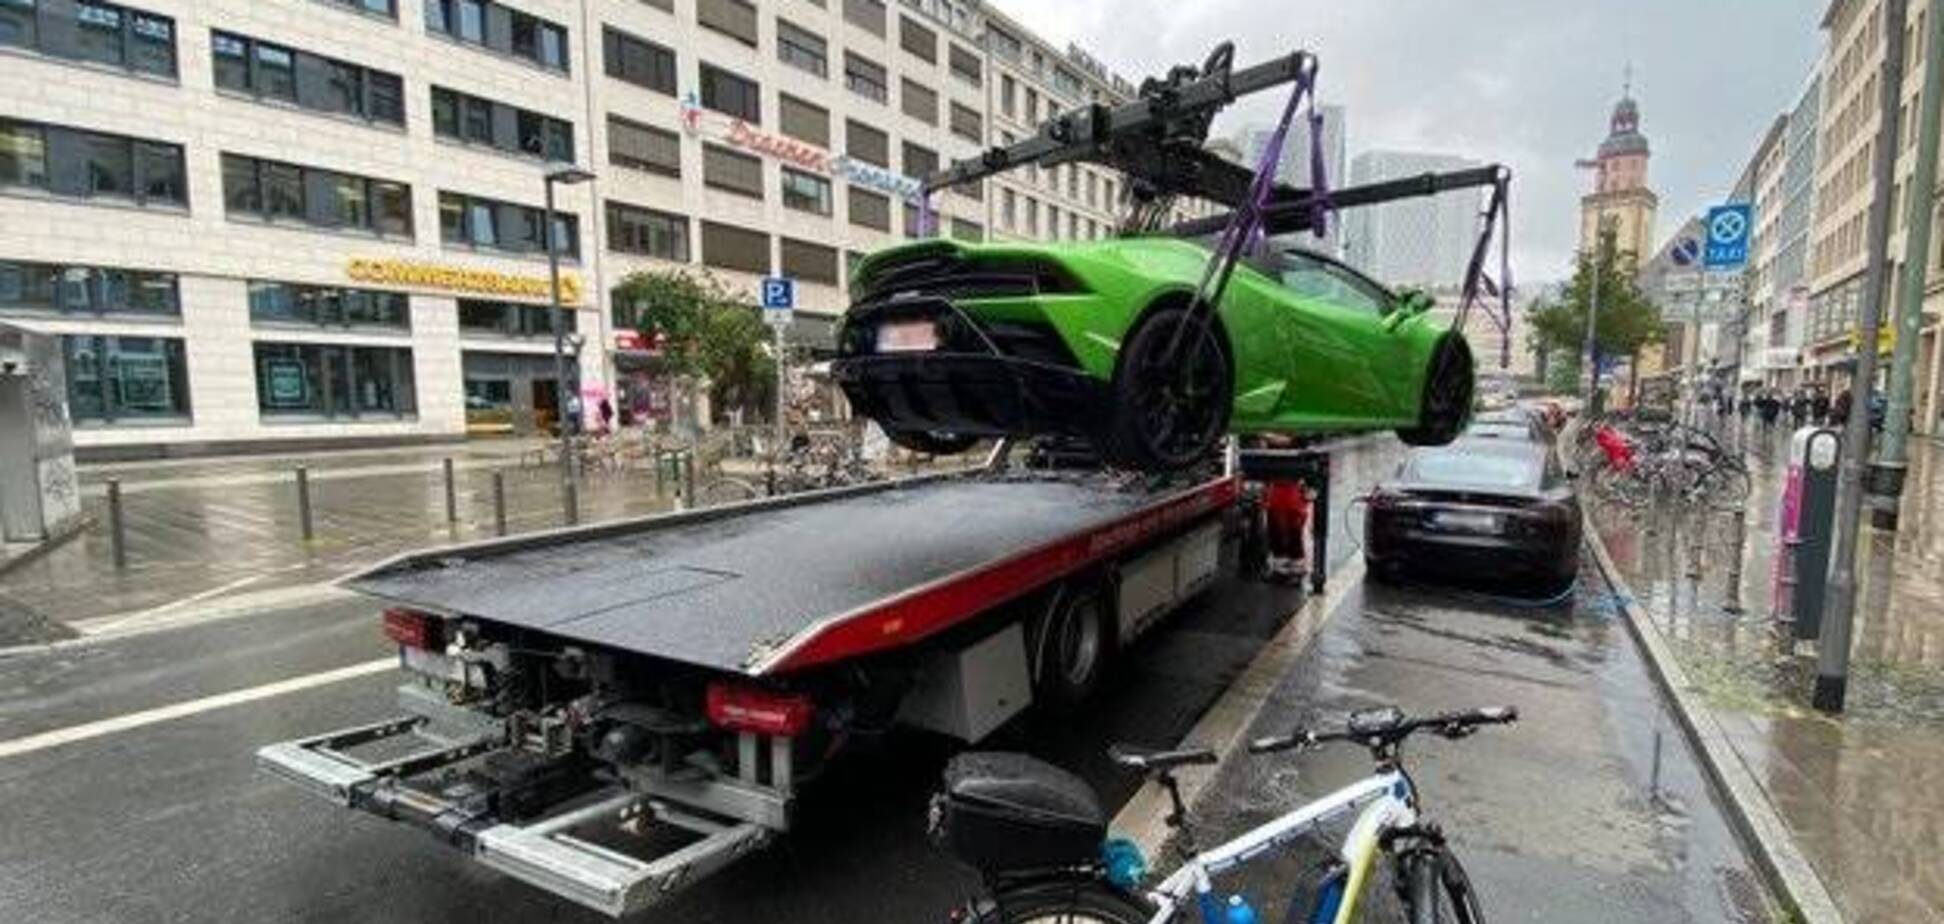 Полиция забрала Lamborghini за парковку на месте для электрокаров